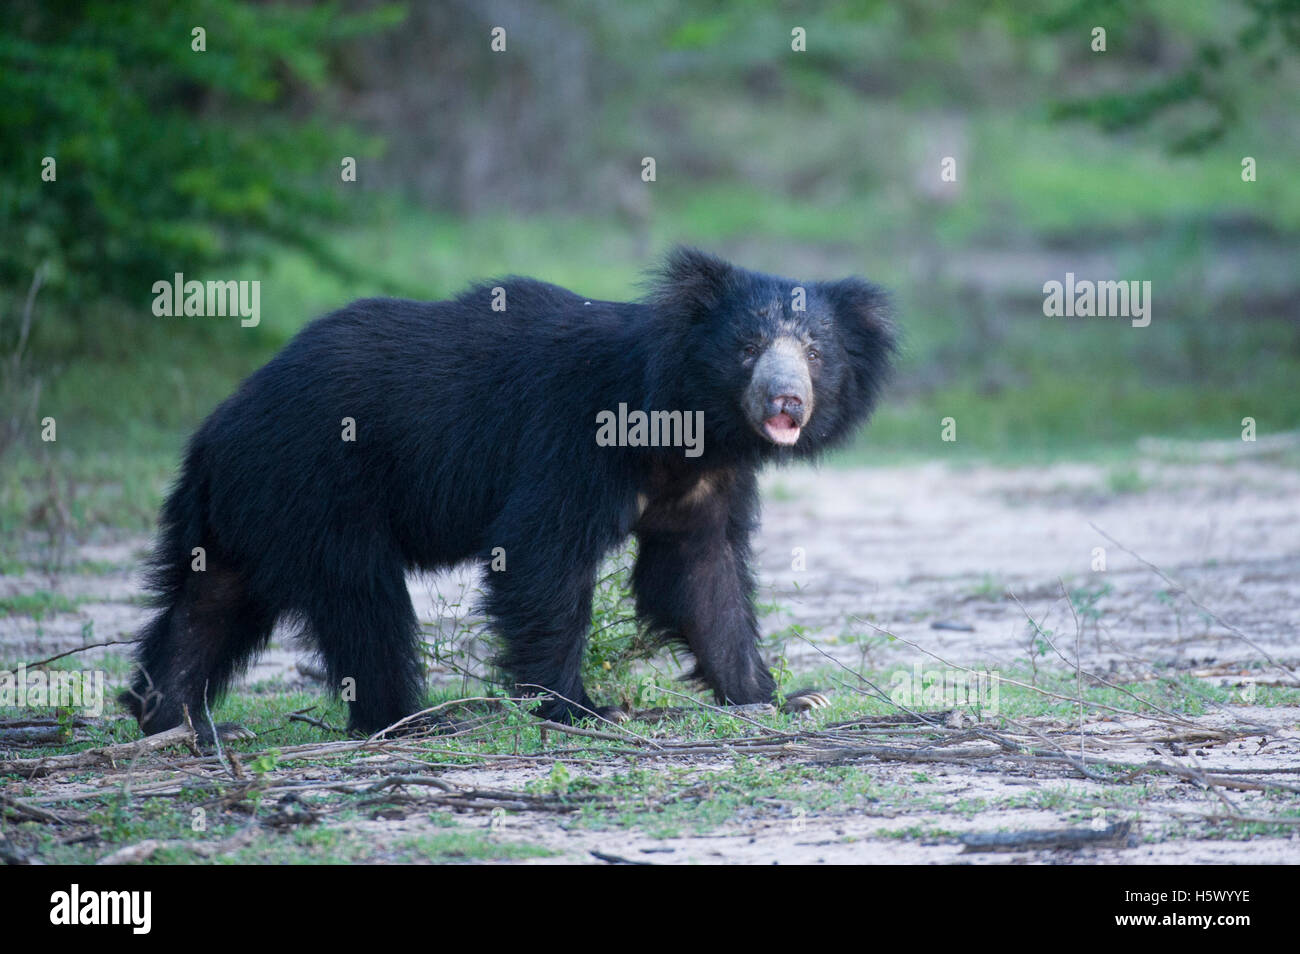 Sloth bear (Melursus ursinus), Yala National Park, Sri Lanka Foto Stock